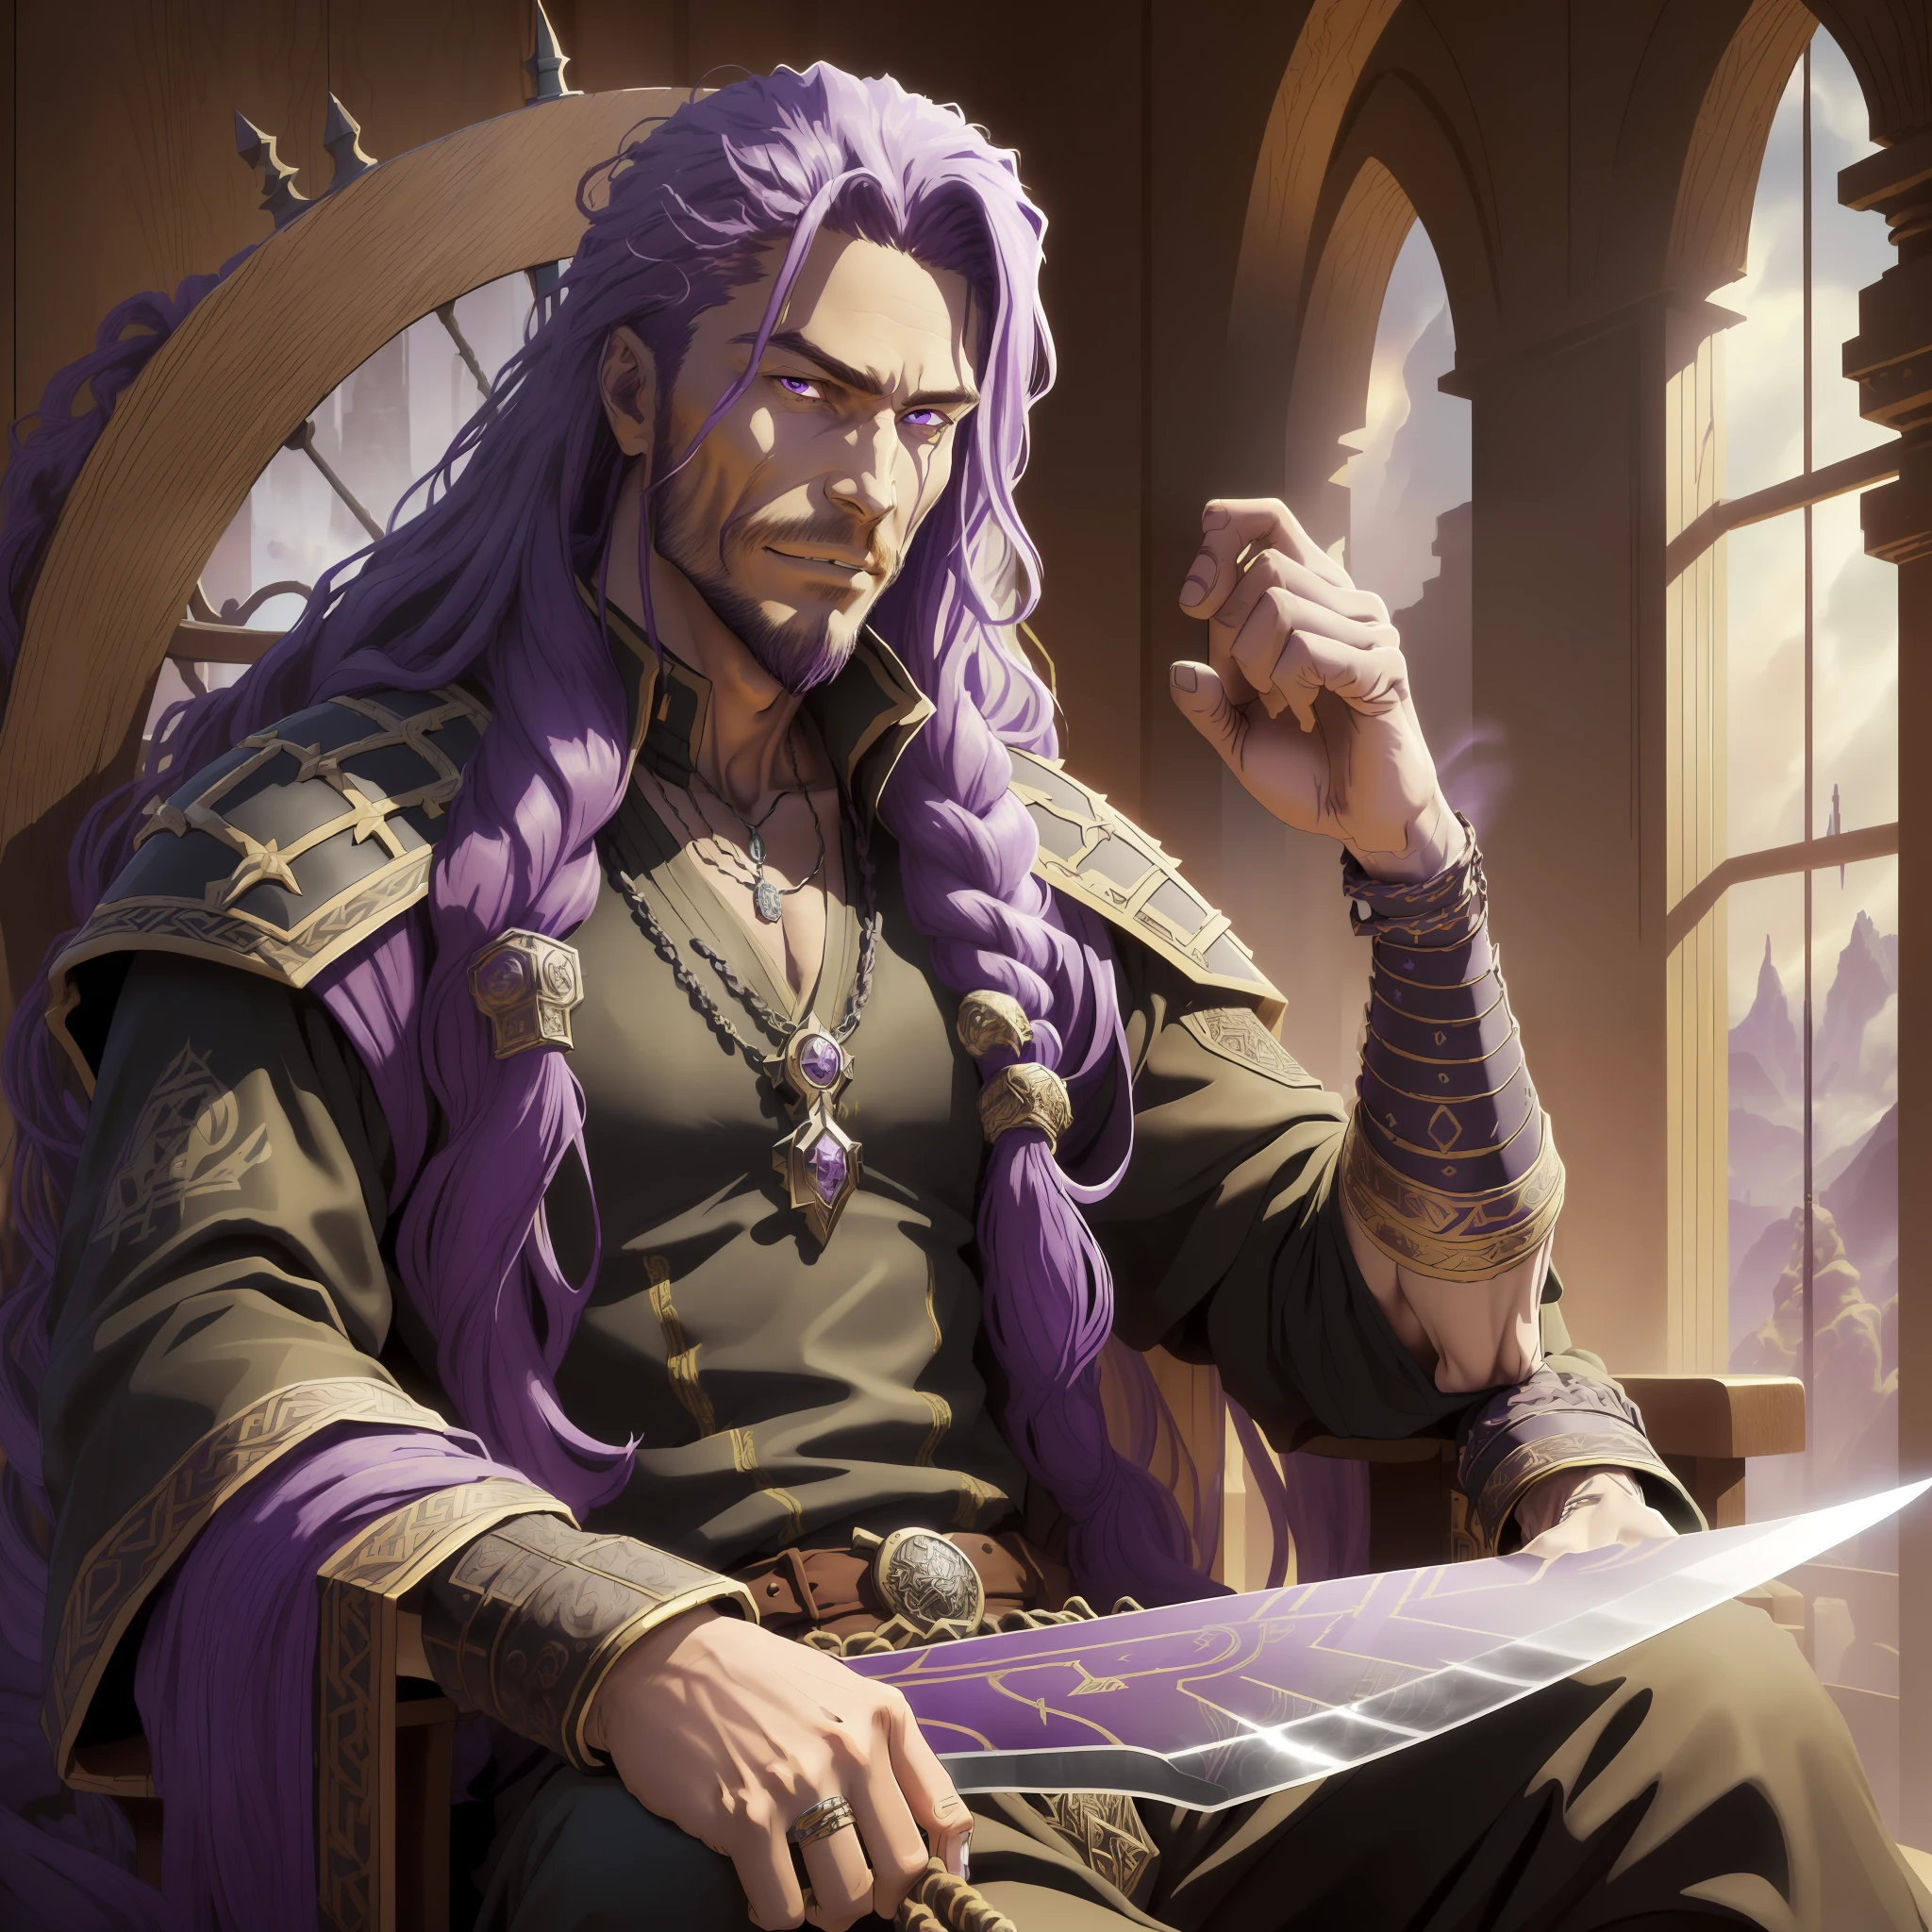 (art conceptuel), (réaliste:1.33), (Carte de profondeur de haute qualité:1.1) Le dessin représente un (homme de 30 ans) assis sur un trône majestueux, situé dans un décor de guerre de l&#39;ère Viking, avec des éléments similaires à ceux de Game of Thrones [".] son (les yeux sont d&#39;un violet foncé( et contraste avec son (cheveux longs et entrelacés dans des dreads également violettes), qui lui coule dans le dos [".] (son skin is a brown hue), qui met en valeur ses traits forts et marquants [".] Il est habillé en noir, avec des vêtements en tissus légers qui semblent avoir un aspect luxueux [".] Sur son cou et ses poignets, il porte plusieurs colliers et bracelets en or, qui brille contre sa peau [".]

Le paysage dans lequel il se trouve est très détaillé, avec une netteté et un réalisme impressionnants, grâce à l’illustration numérique en 4K [".] Plusieurs éléments sont présents qui indiquent une scène de guerre à l&#39;époque des Vikings, comme brûler des navires, Soldats avec boucliers et épées, et fumée [".] Le trône sur lequel il est assis est orné, avec des détails en bois et des sculptures complexes [".]

(L’homme tient un long, épée tranchante dans sa main droite), qui a également été dessiné en détail avec netteté et réalisme, et semble être une épée viking [".] son smile is mischievous, presque imperceptible, et semble indiquer qu&#39;il connaît des secrets que personne d&#39;autre ne connaît. Il scrute son environnement avec un regard perçant, comme s&#39;il avait toujours une longueur d&#39;avance sur les autres [".]

son purple dreaded hair is an important element of his appearance, et a été conçu avec soin et attention aux détails [".] L&#39;épée est également une partie importante du dessin, et a été représenté de manière réaliste et précise [".] Le design transmet la sensation d’une scène de bataille épique, avec un mélange d’éléments fantastiques et d’histoire [".]